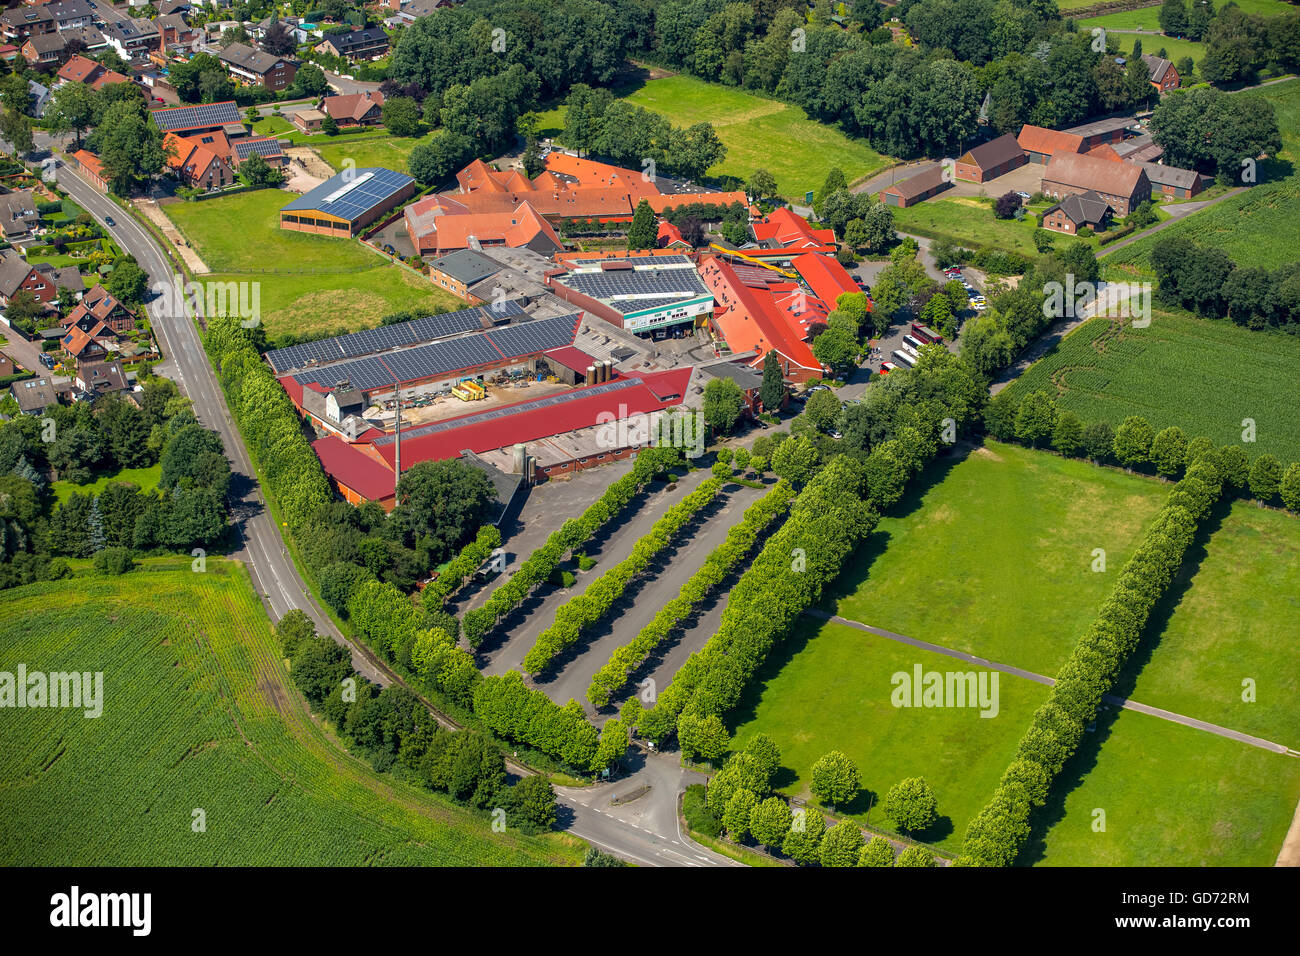 Vista aerea, Prickings-cantiere, contemplazione Park agricoltore Ewald, Sythen, Haltern, regione della Ruhr, Renania settentrionale-Vestfalia, Germania, Foto Stock